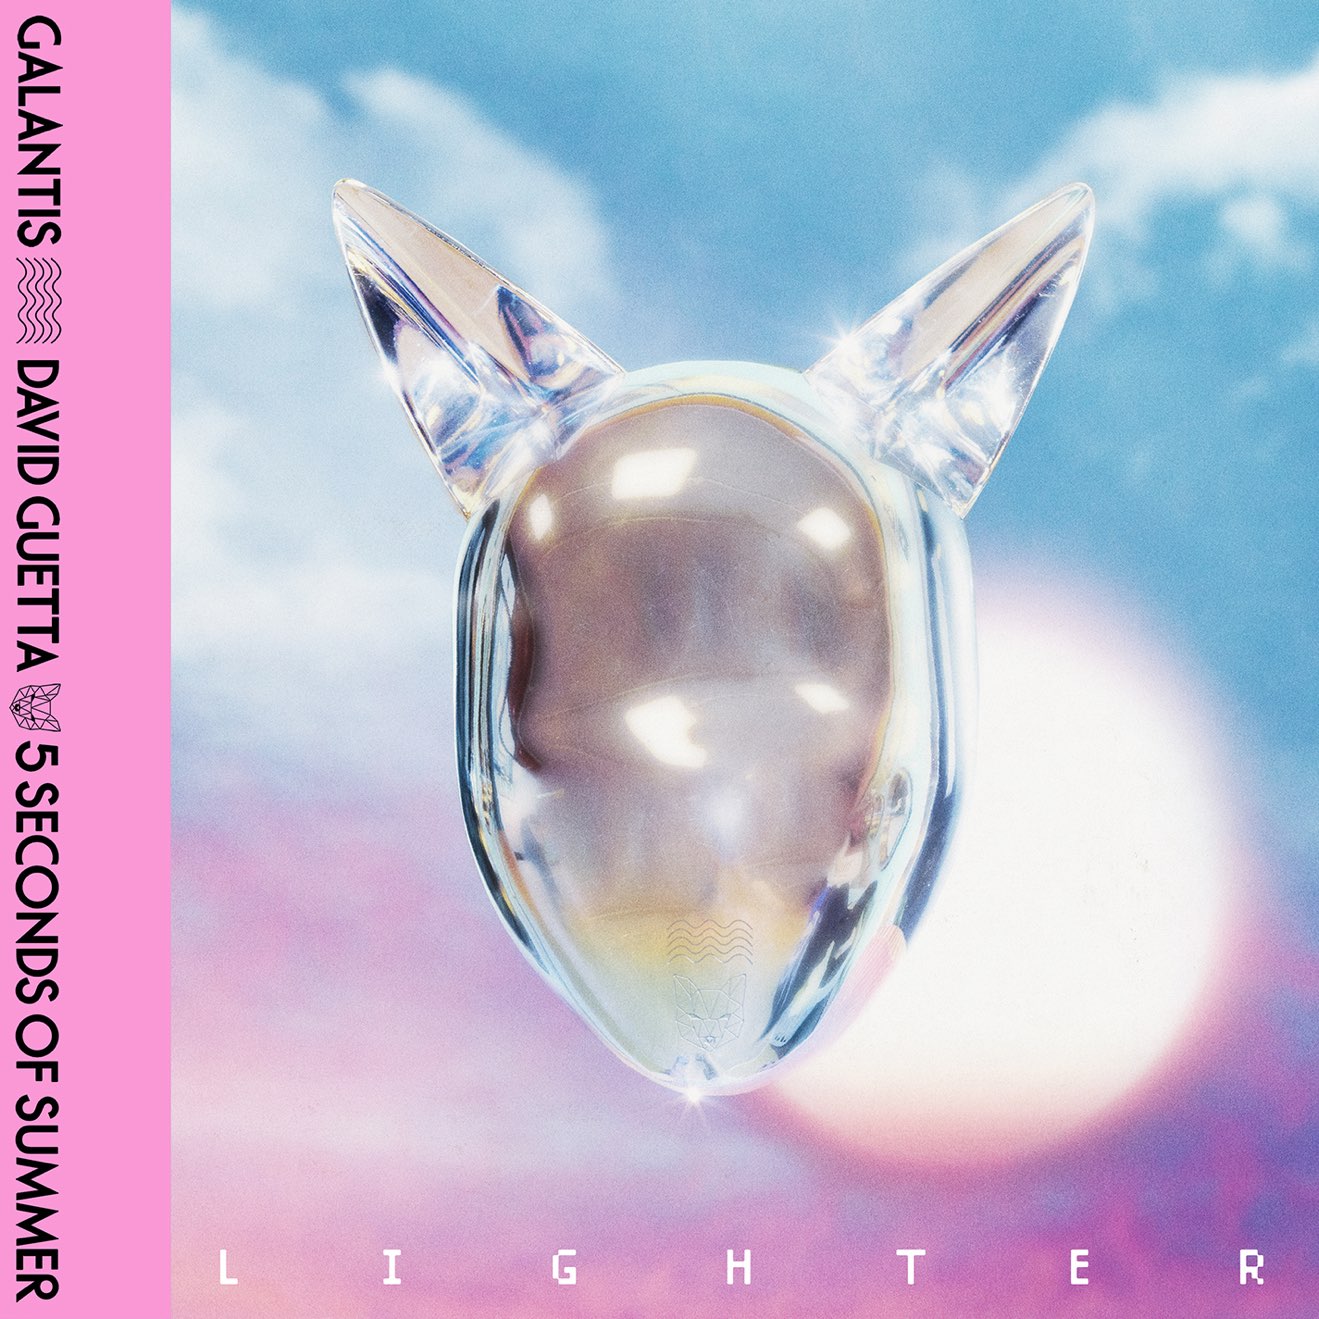 Galantis, David Guetta & 5 Seconds of Summer – Lighter (Extended Mix) – Single (2024) [iTunes Match M4A]